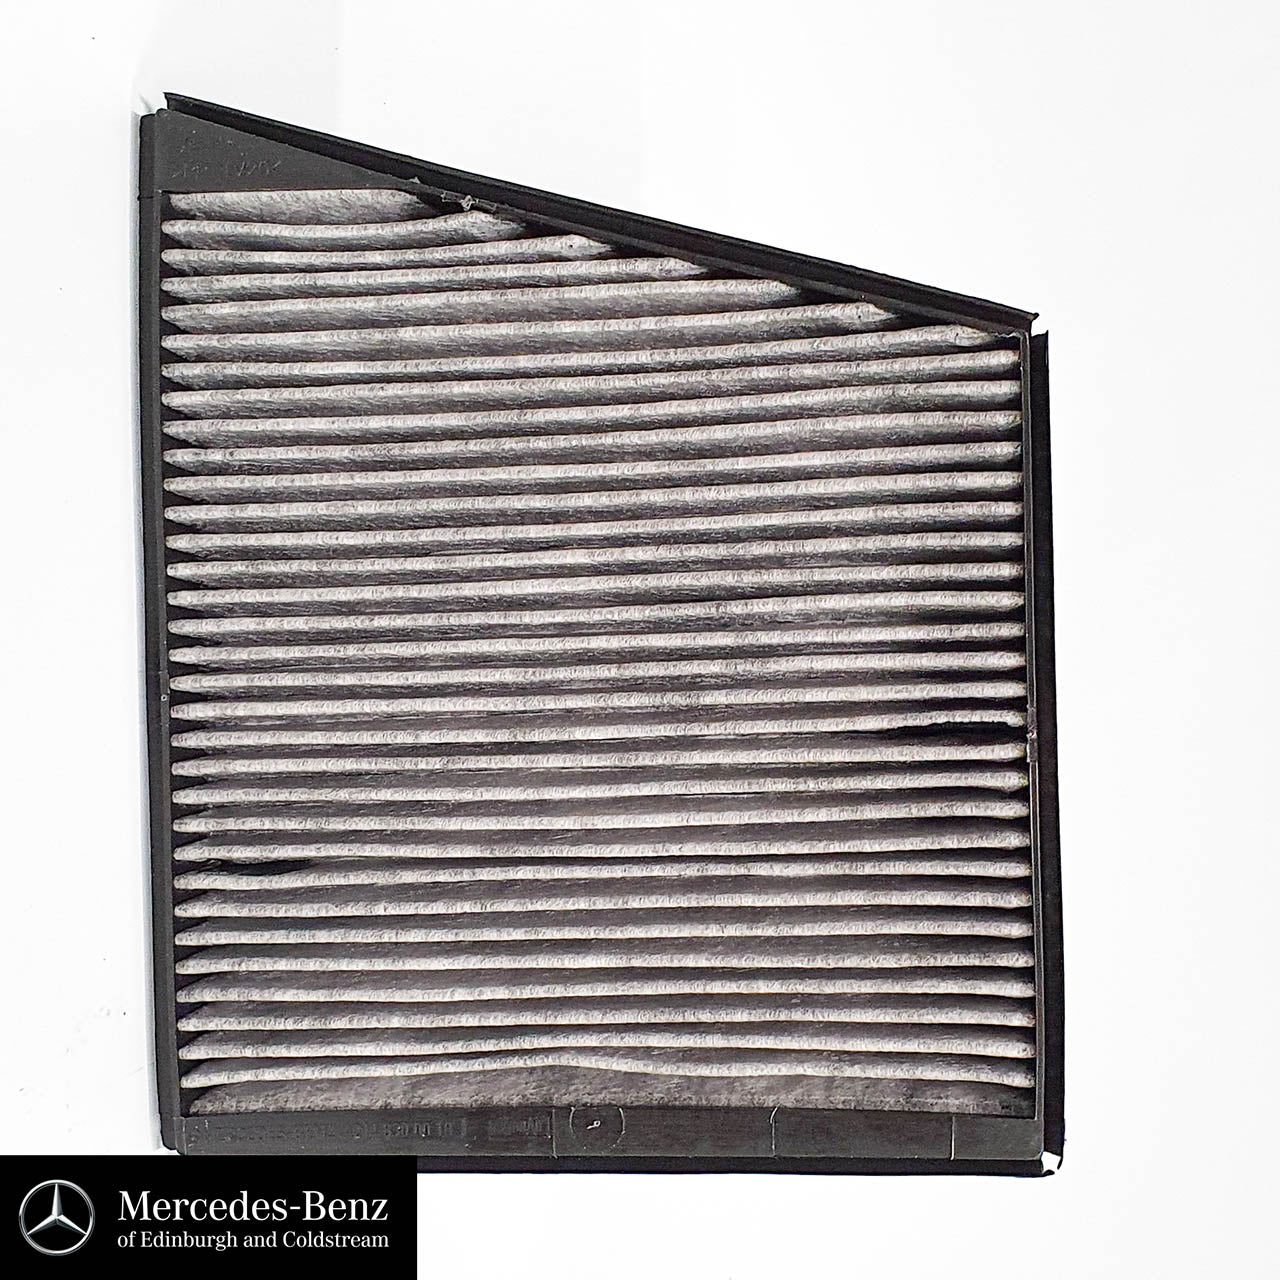 Genuine Mercedes-Benz Combination filter - Pollen (Cabin) Filter E Class, CLS